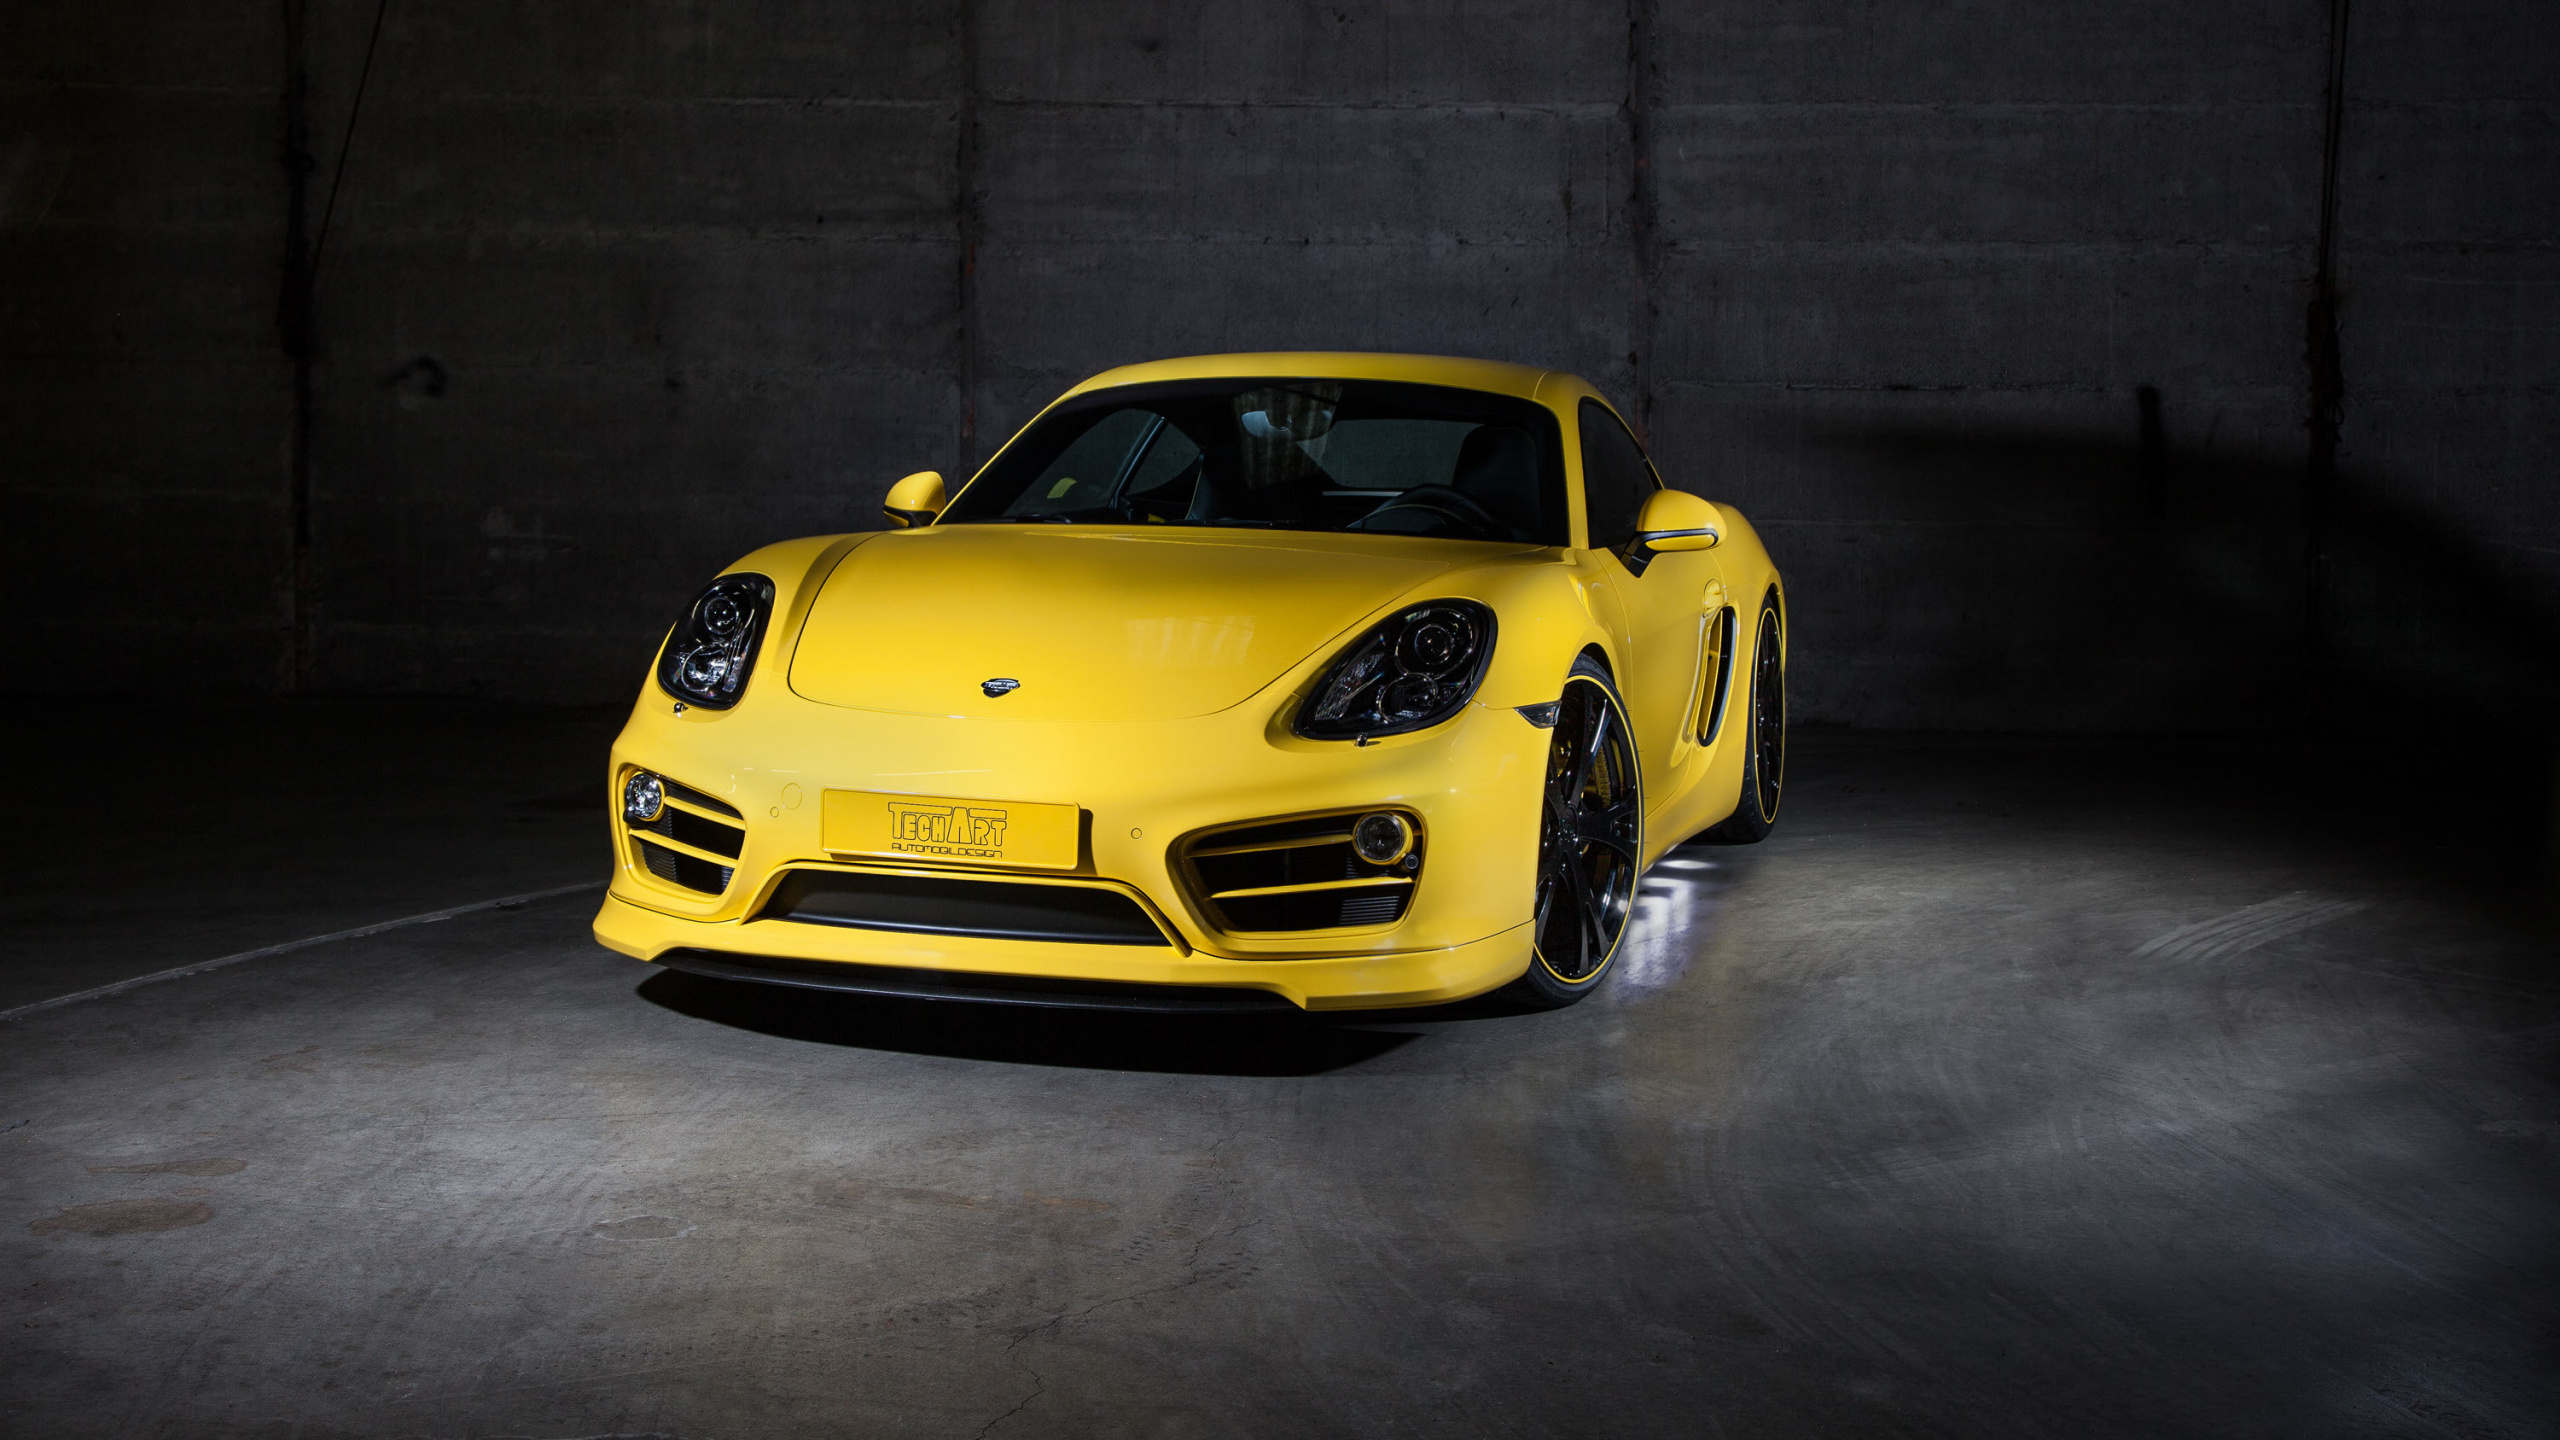 Yellow Porsche 911 Parked in a Garage. Wallpaper in 2560x1440 Resolution